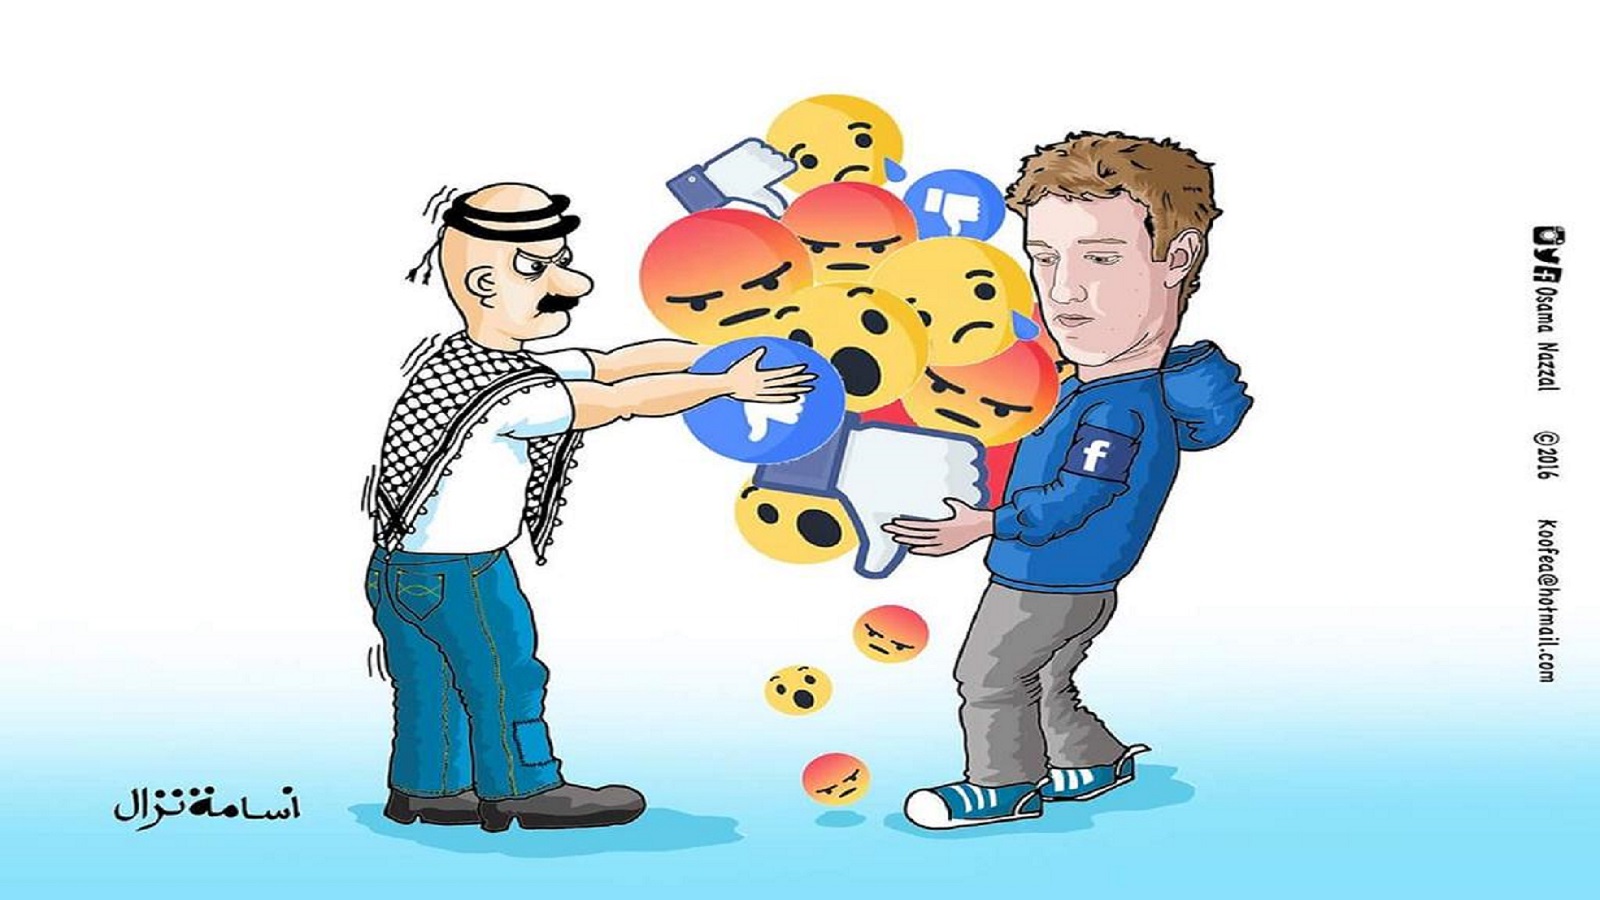 "فايسبوك يراقب فلسطين": مشاركة إسرائيل في القتل؟